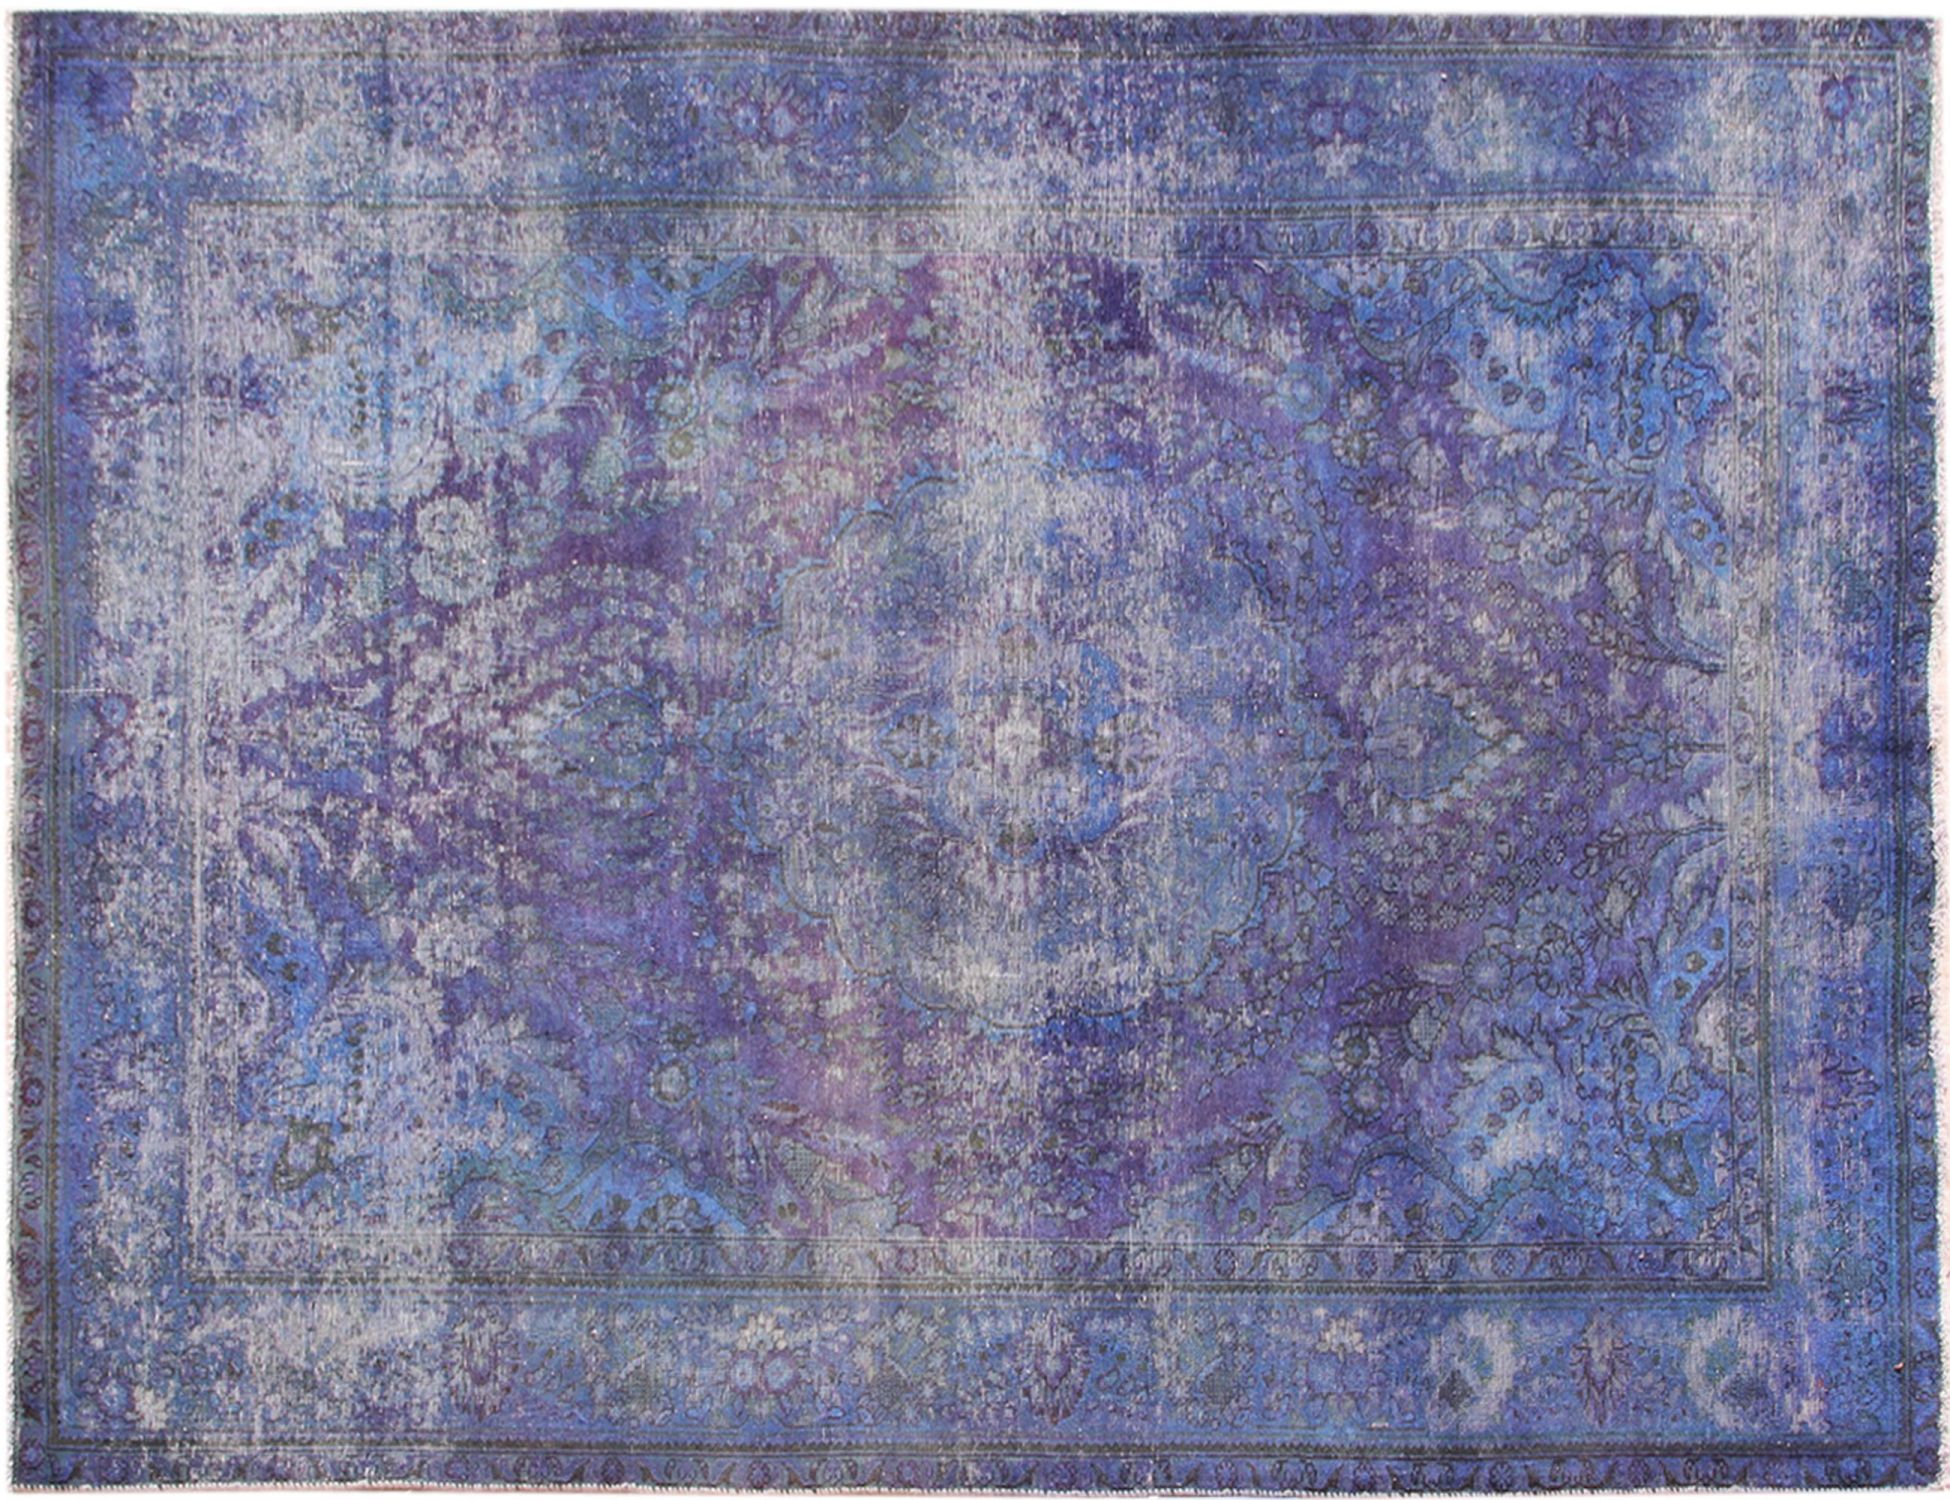 Persian Vintage Carpet  blue <br/>295 x 206 cm